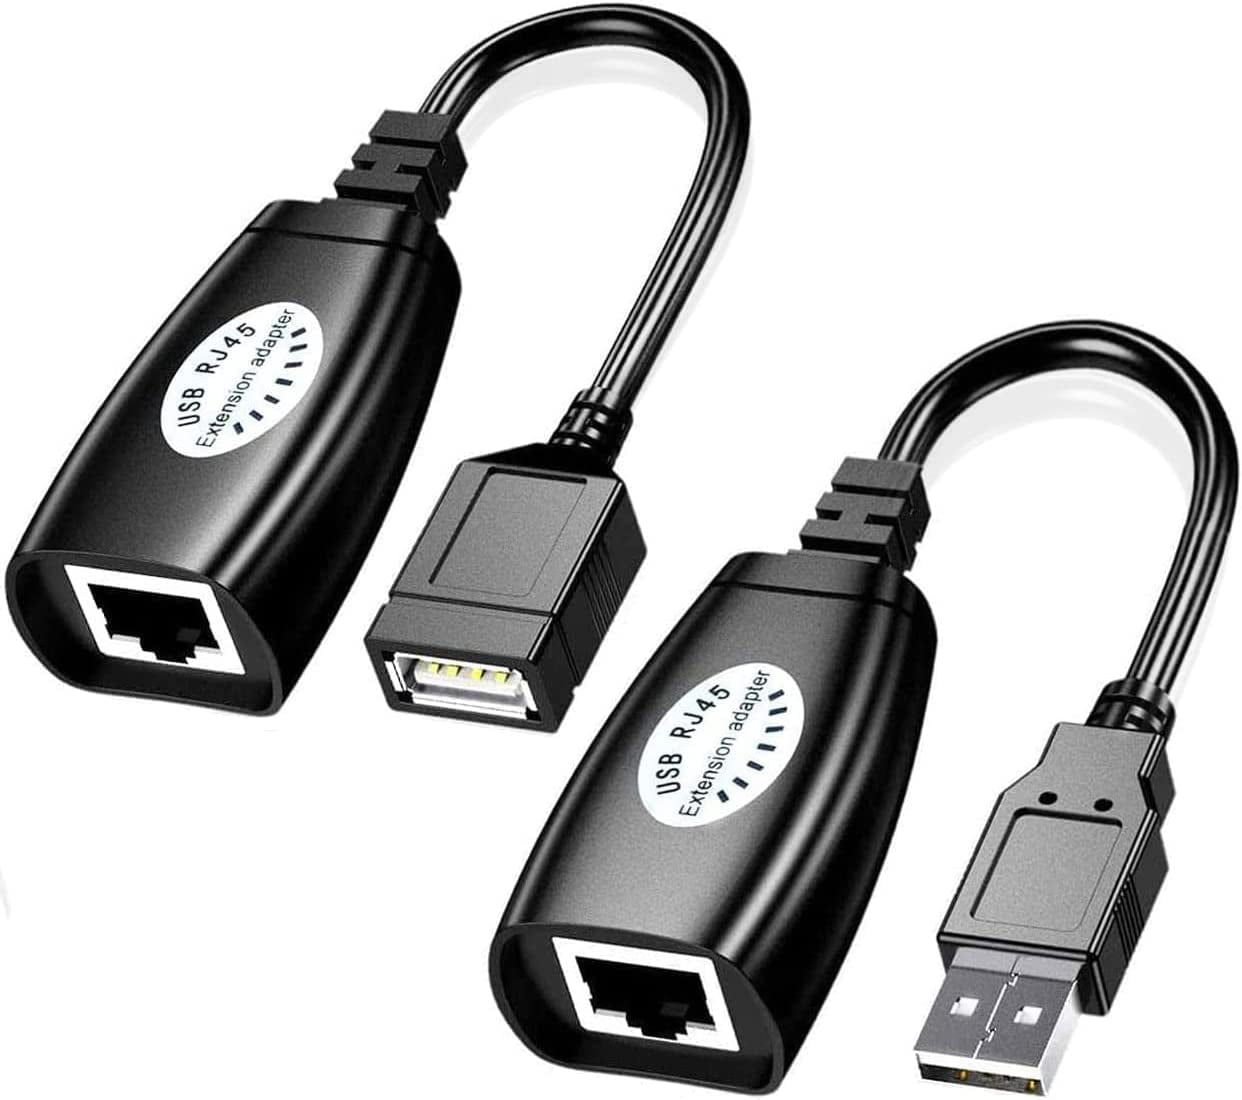 NT50-B  Extensor Alargador USB 2.0 por Cable Cat5 o Cat6 RJ45 - hasta 50m  de Alcance - Juego Extensor Adaptador de Puerto USB de Alta Velocidad - Ali